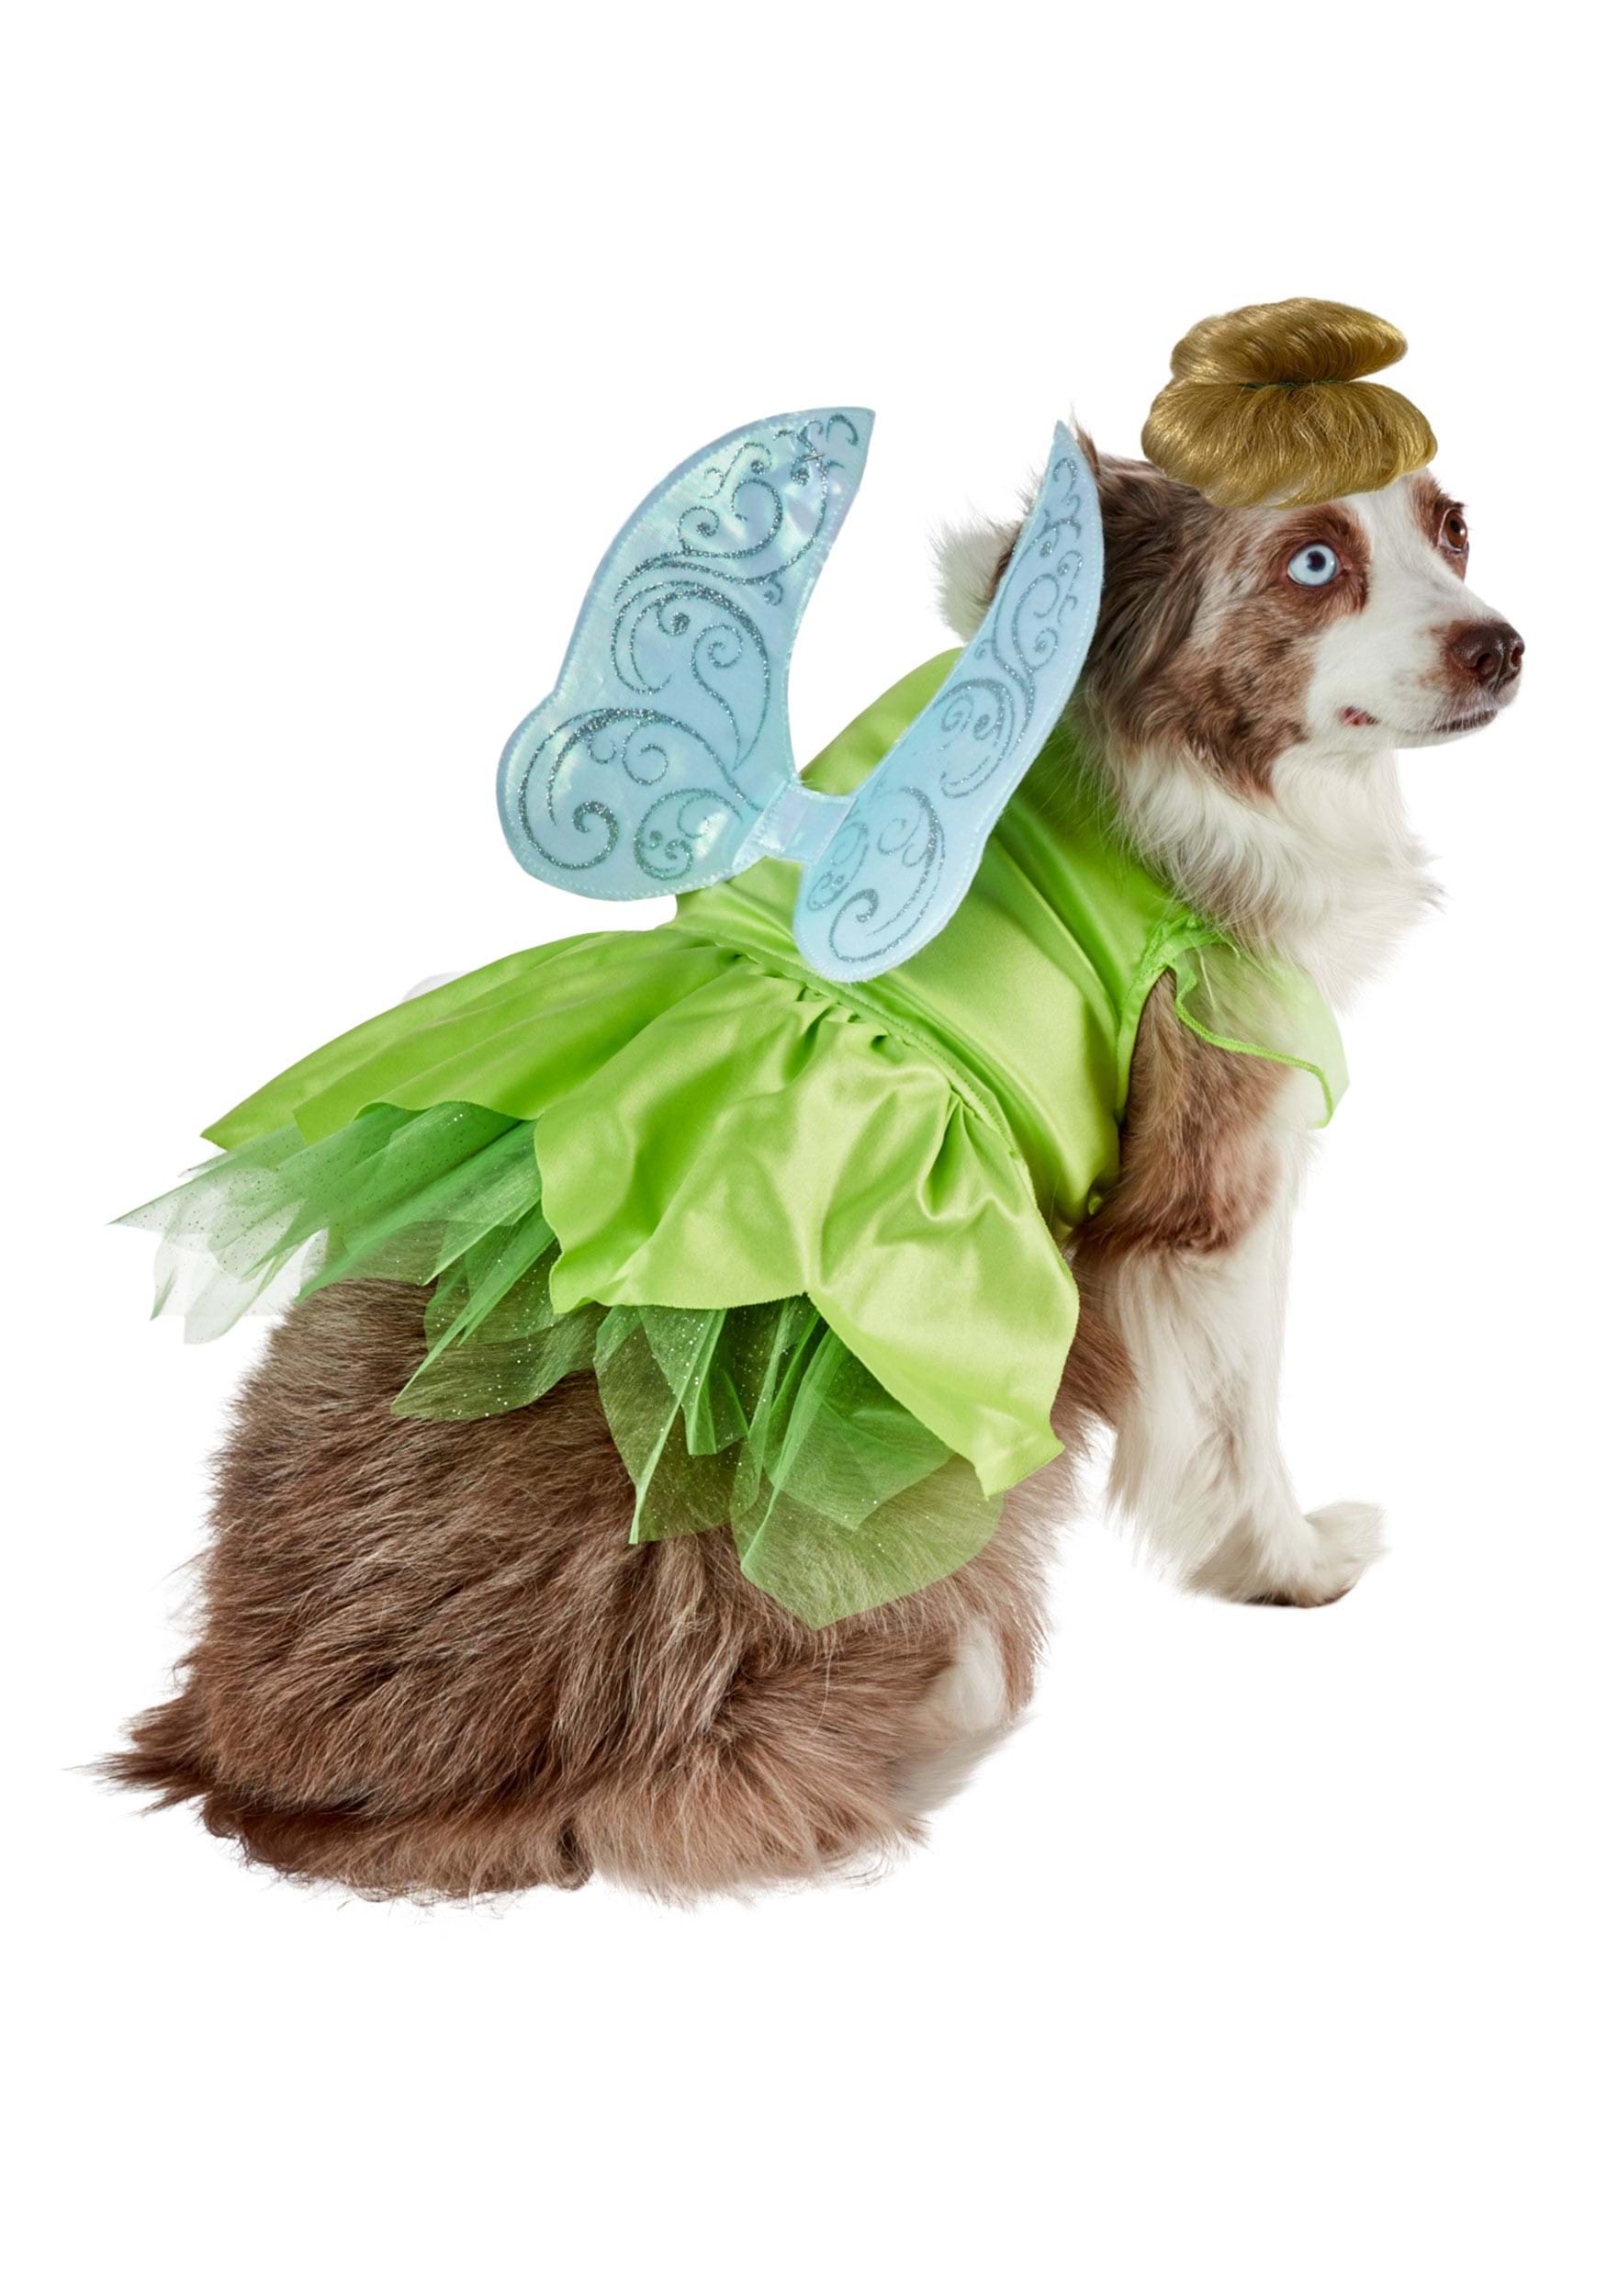 Peter Pan Tinker Bell Pet Dog Costume